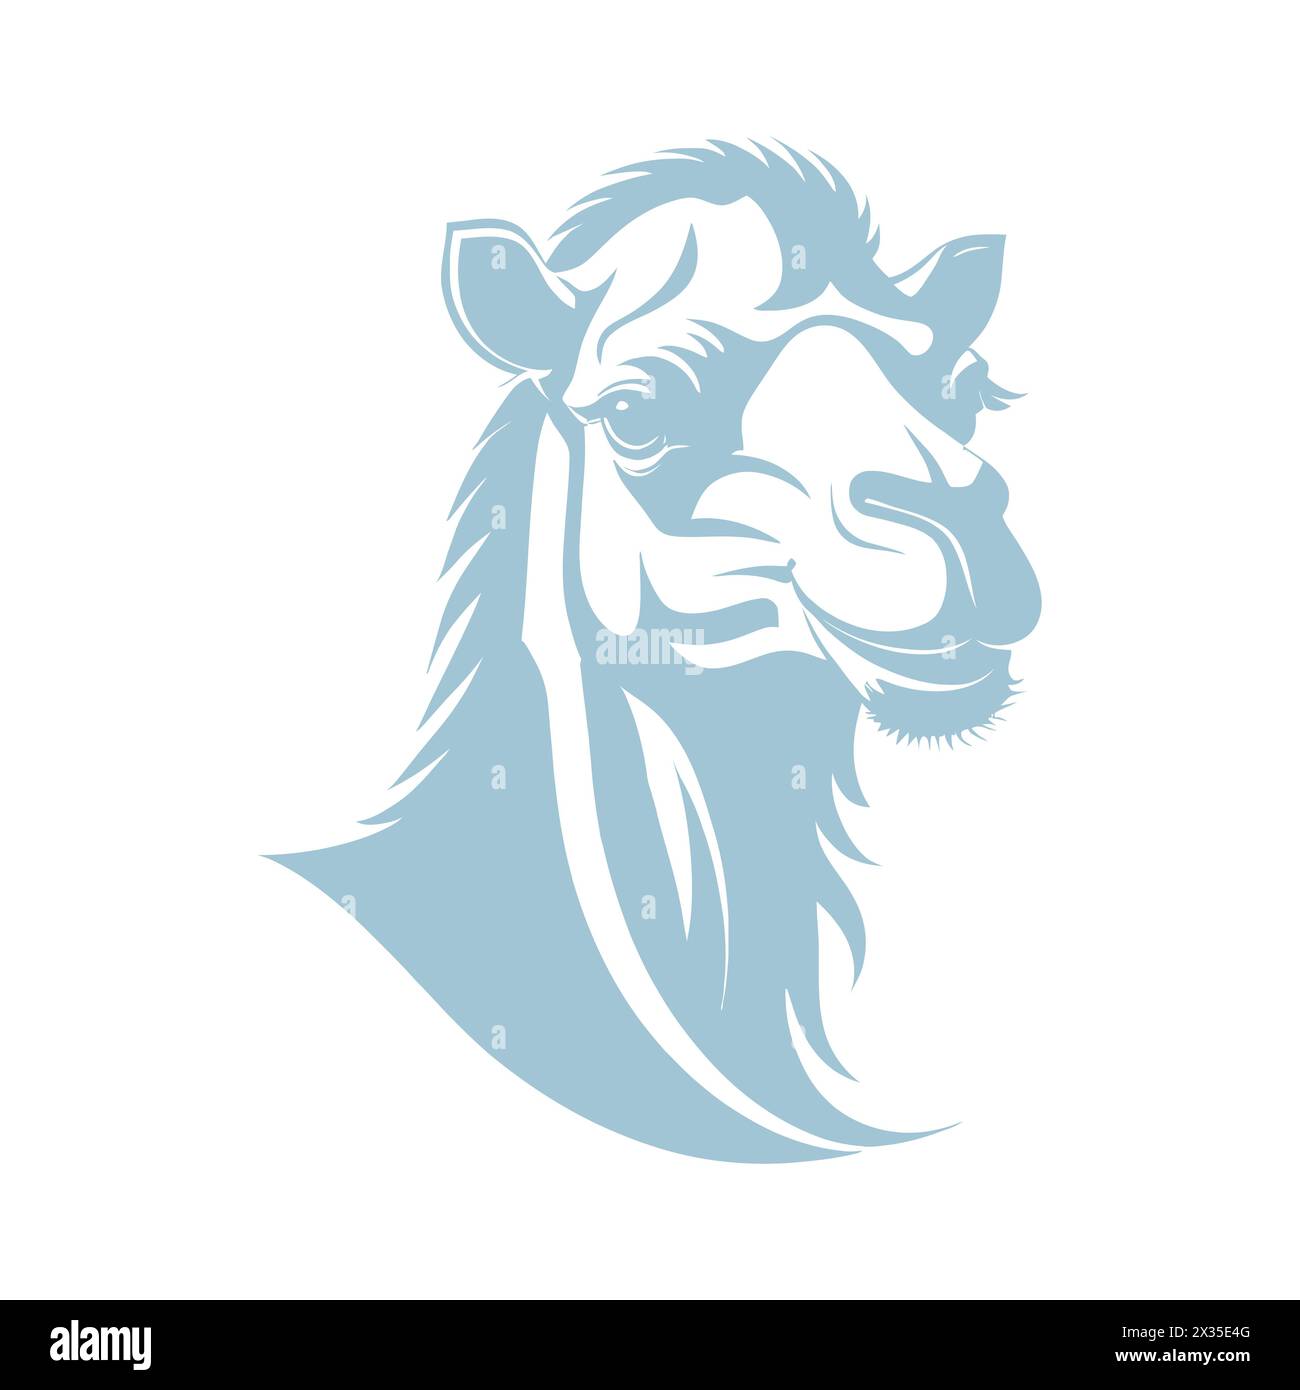 Immagine vettoriale di una testa di cammello su uno sfondo bianco. Elemento di progettazione. Illustrazione Vettoriale